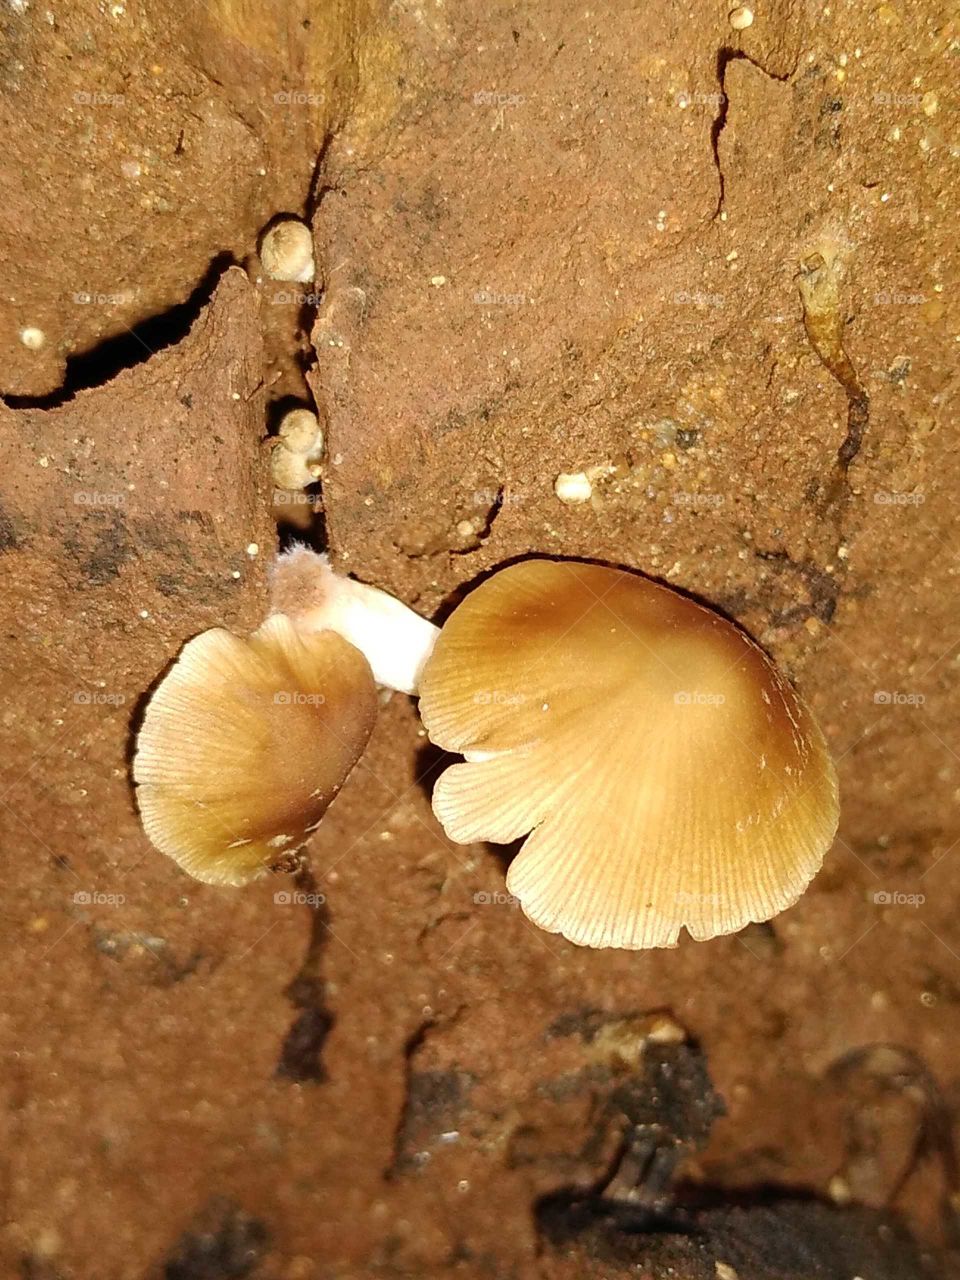 mushrooms on the dead wood